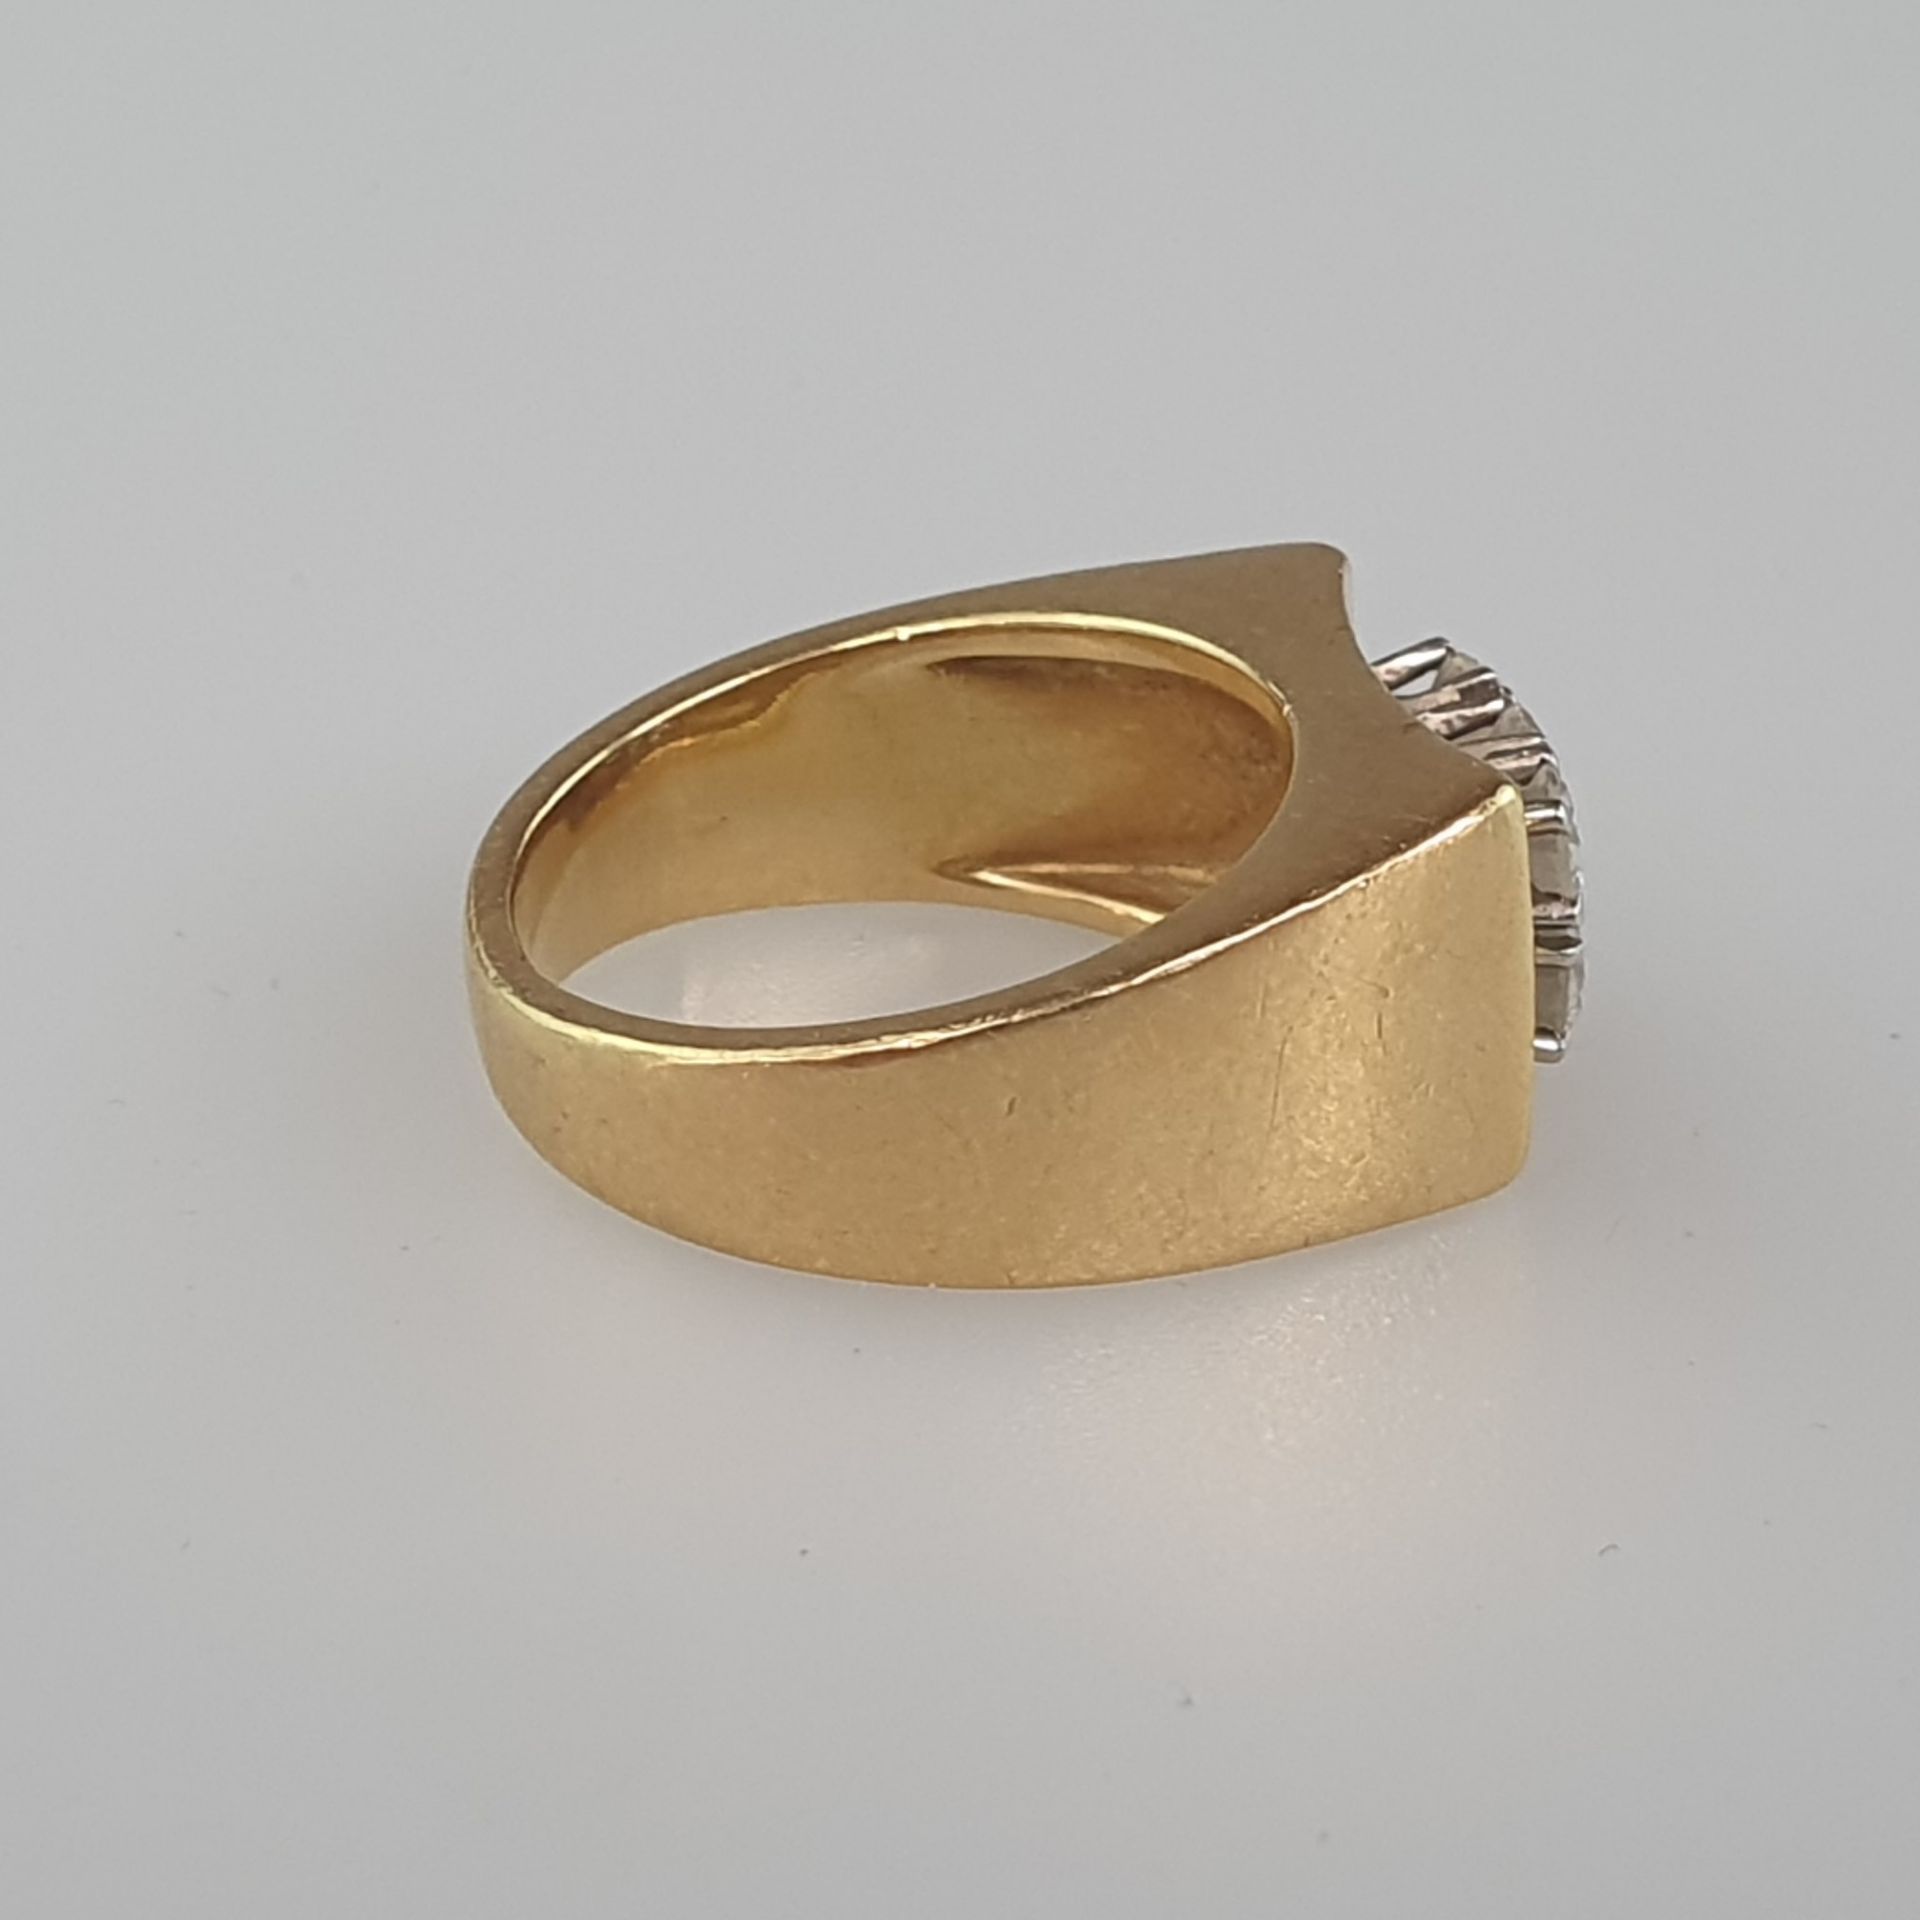 Diamantring - Gelbgold 750/000 (18 Kt.), gestempelt „750“, rechteckiger Ringkopf ausgefasst mit sec - Bild 3 aus 5